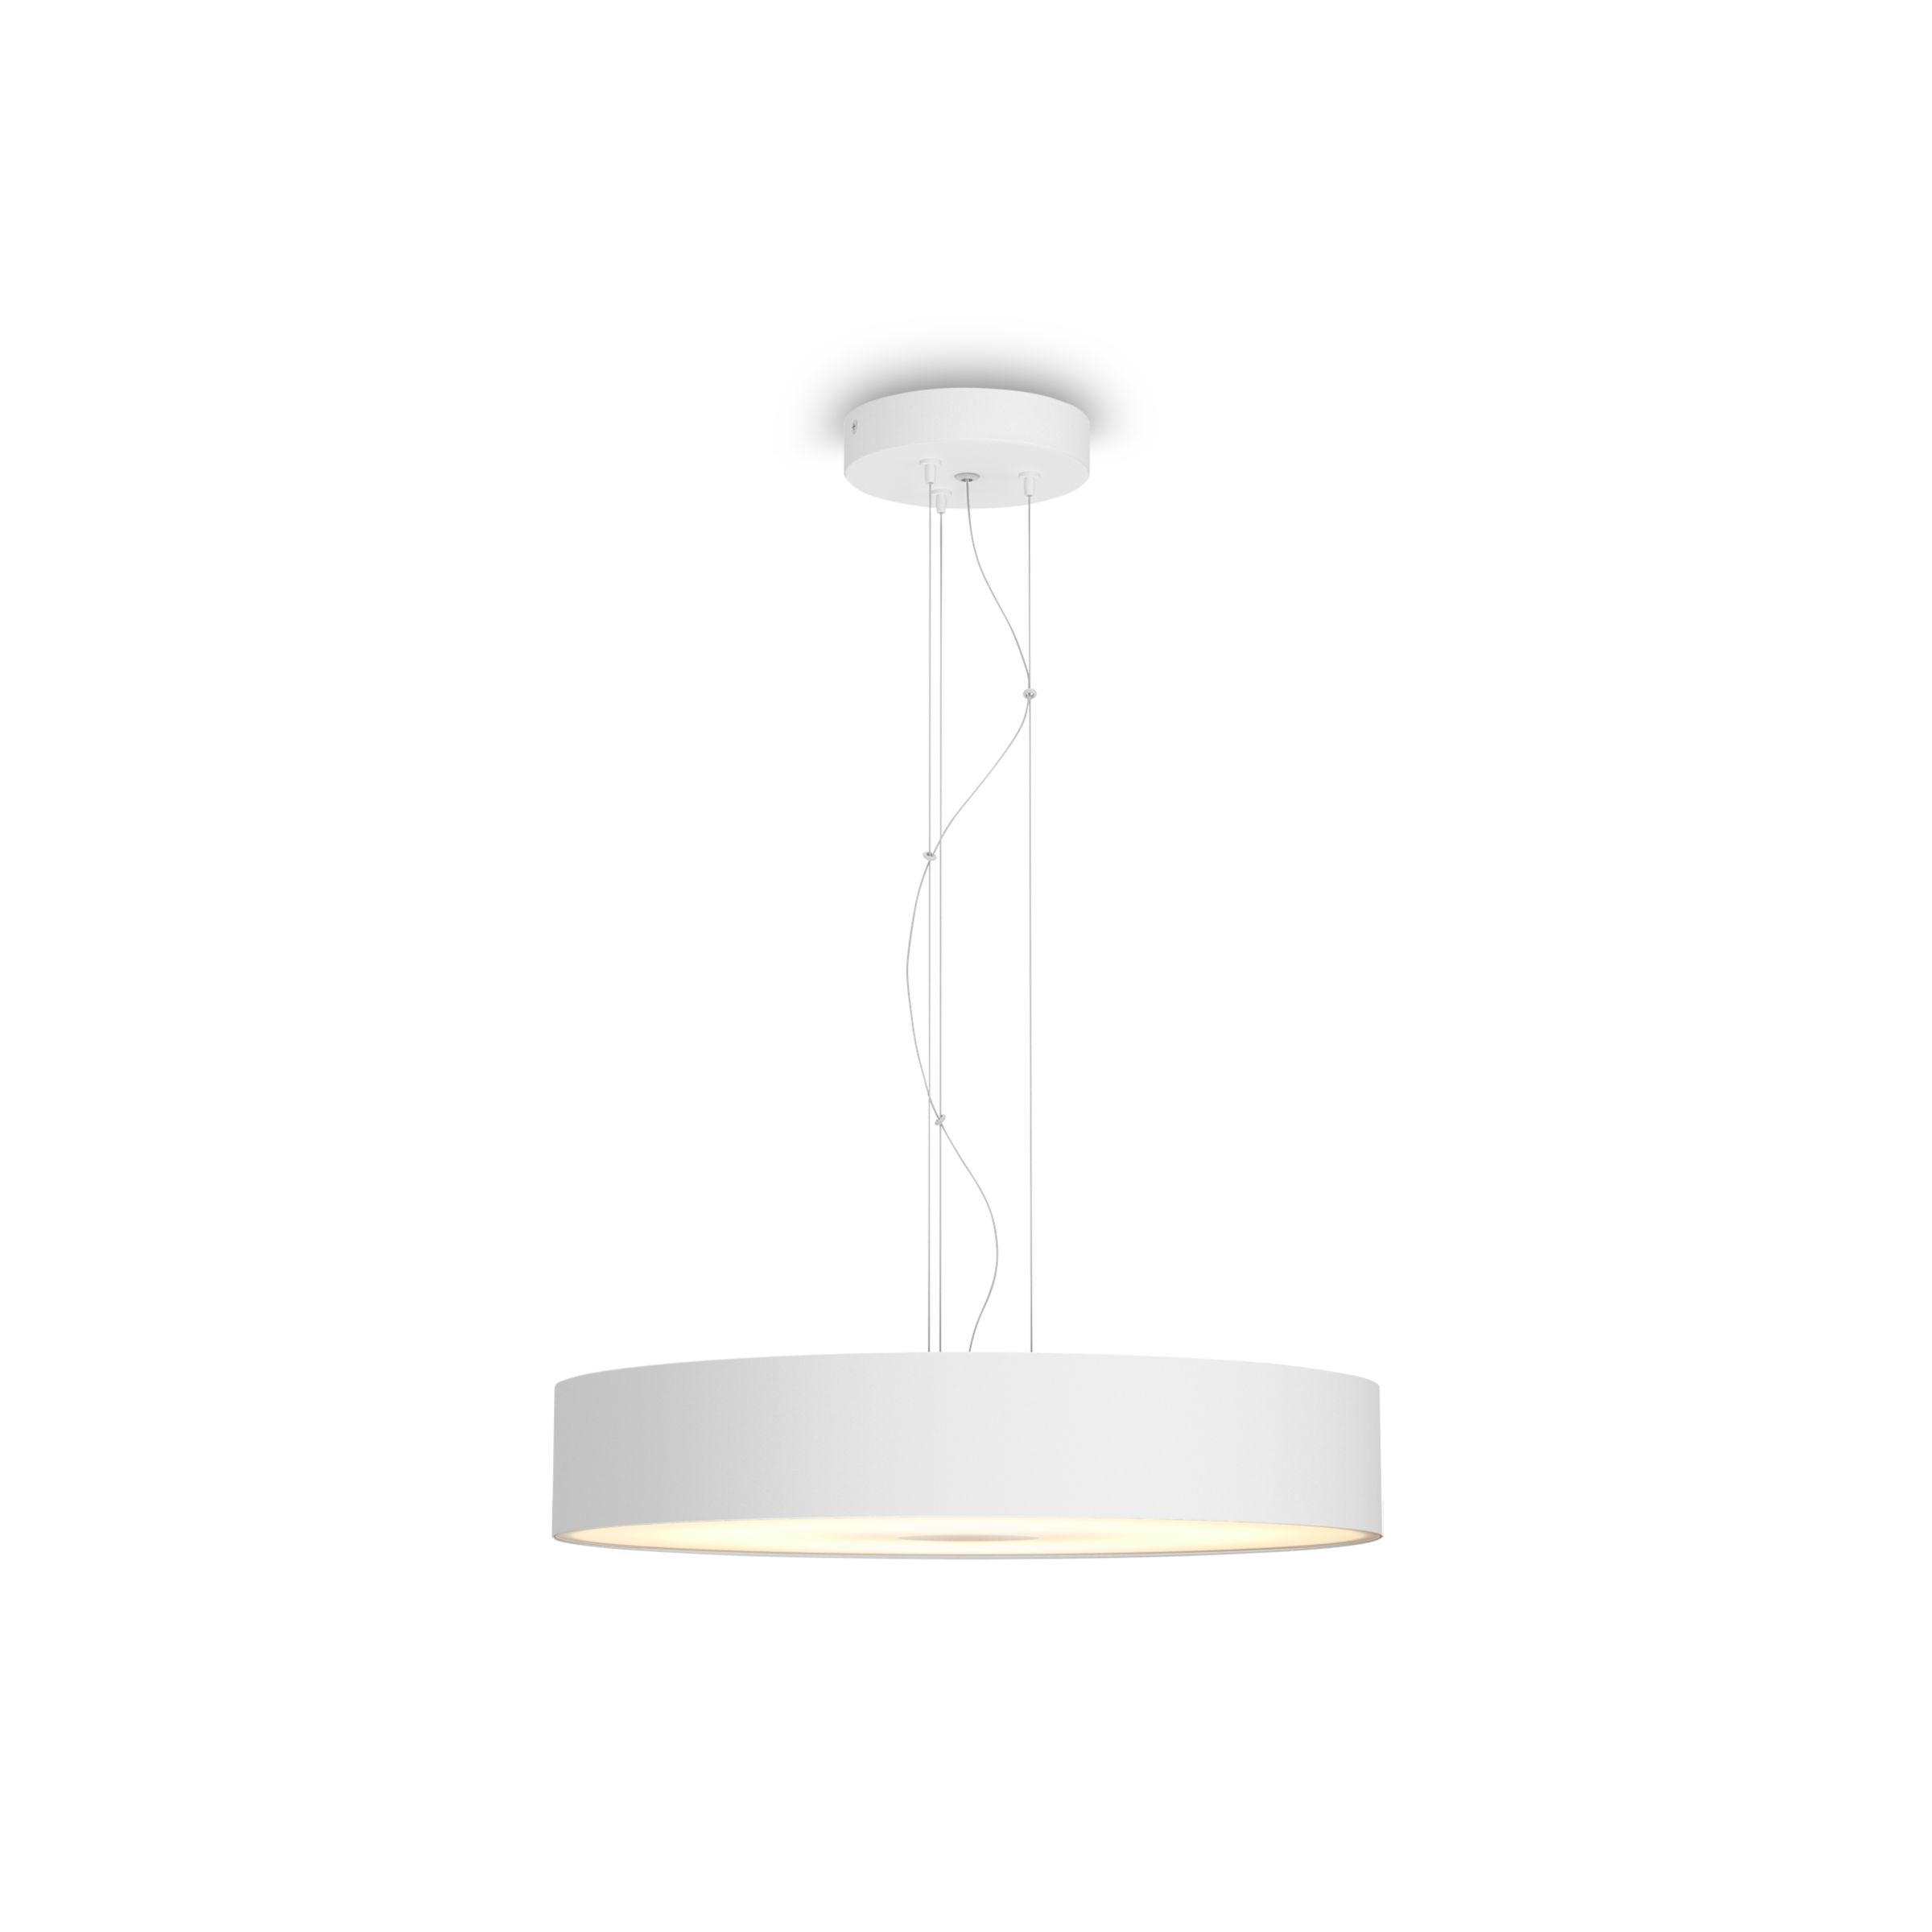 werper favoriete Trein Hue White ambiance Fair hanglamp | Philips Hue NL